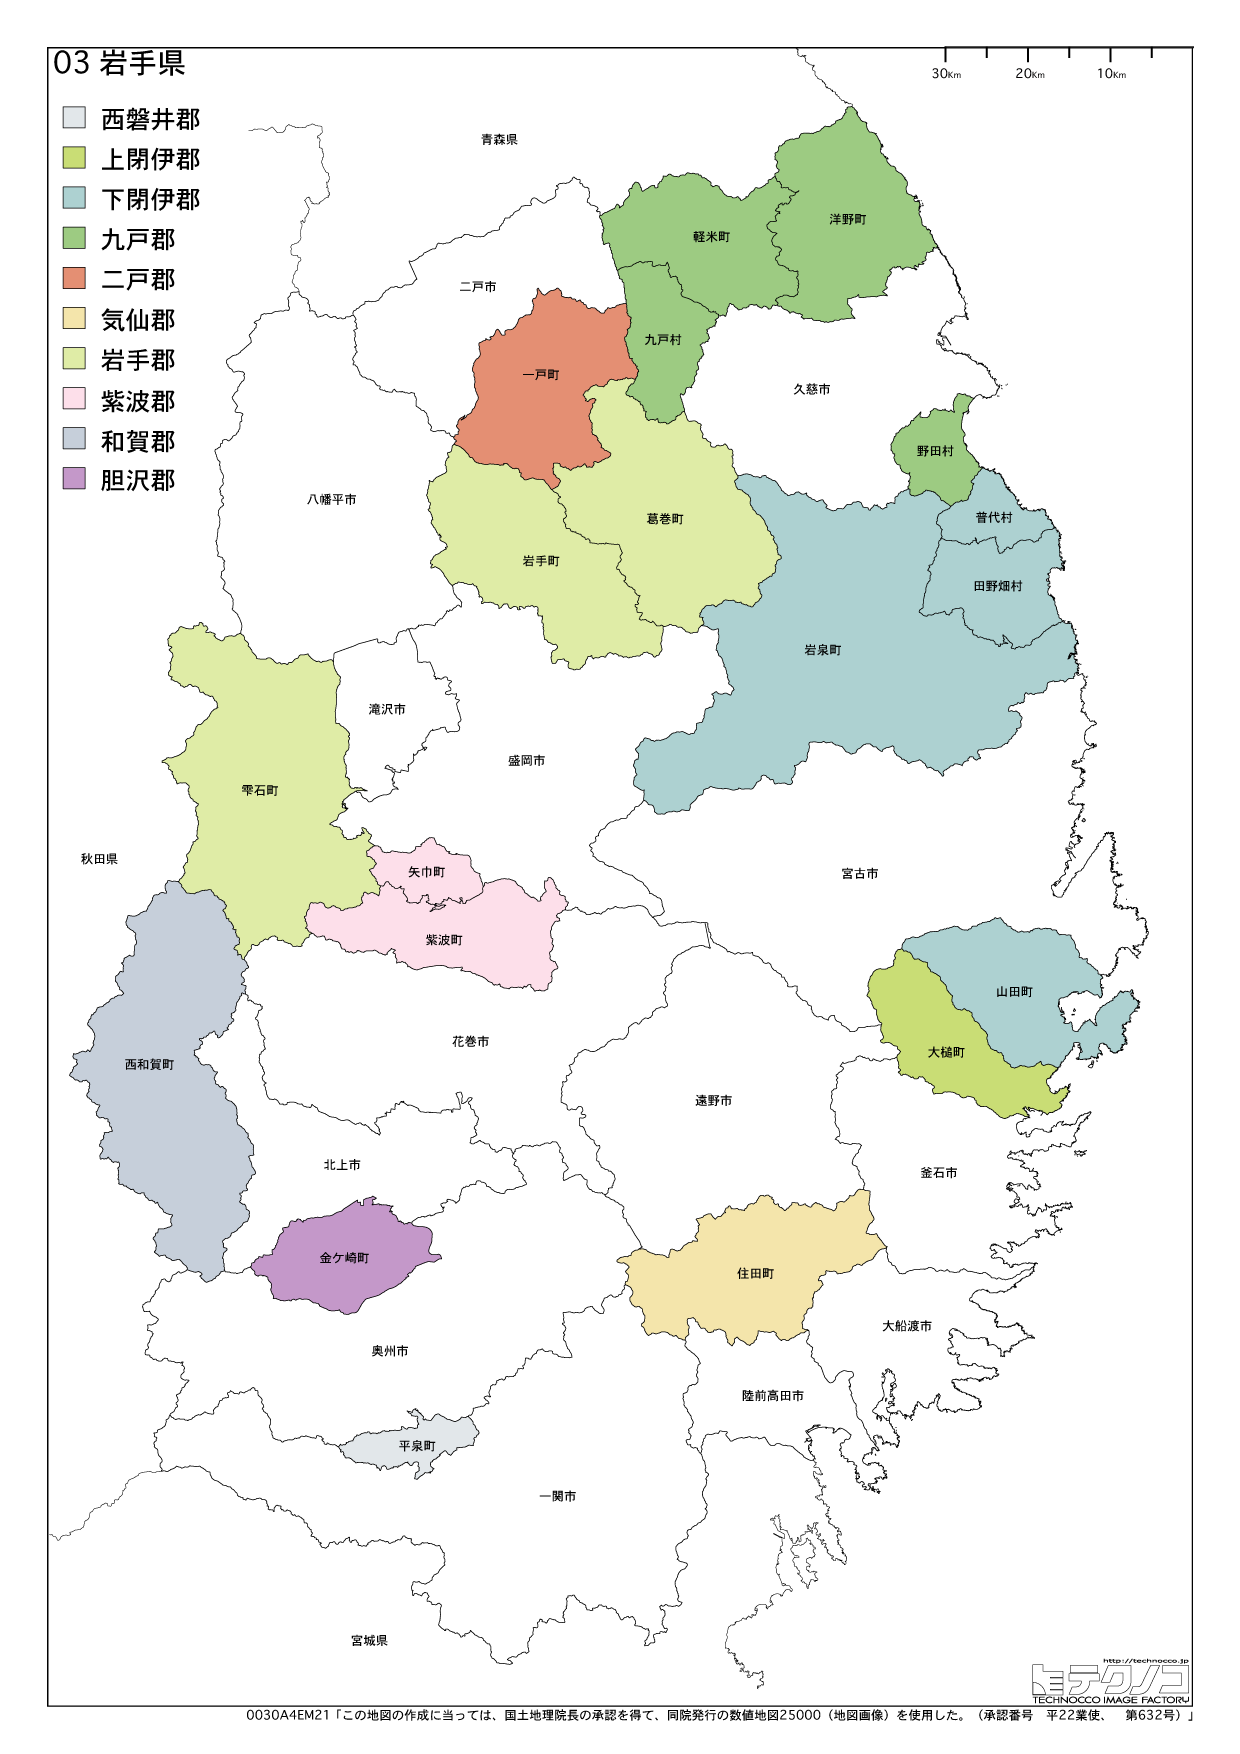 岩手県の白地図と市町村の合併情報